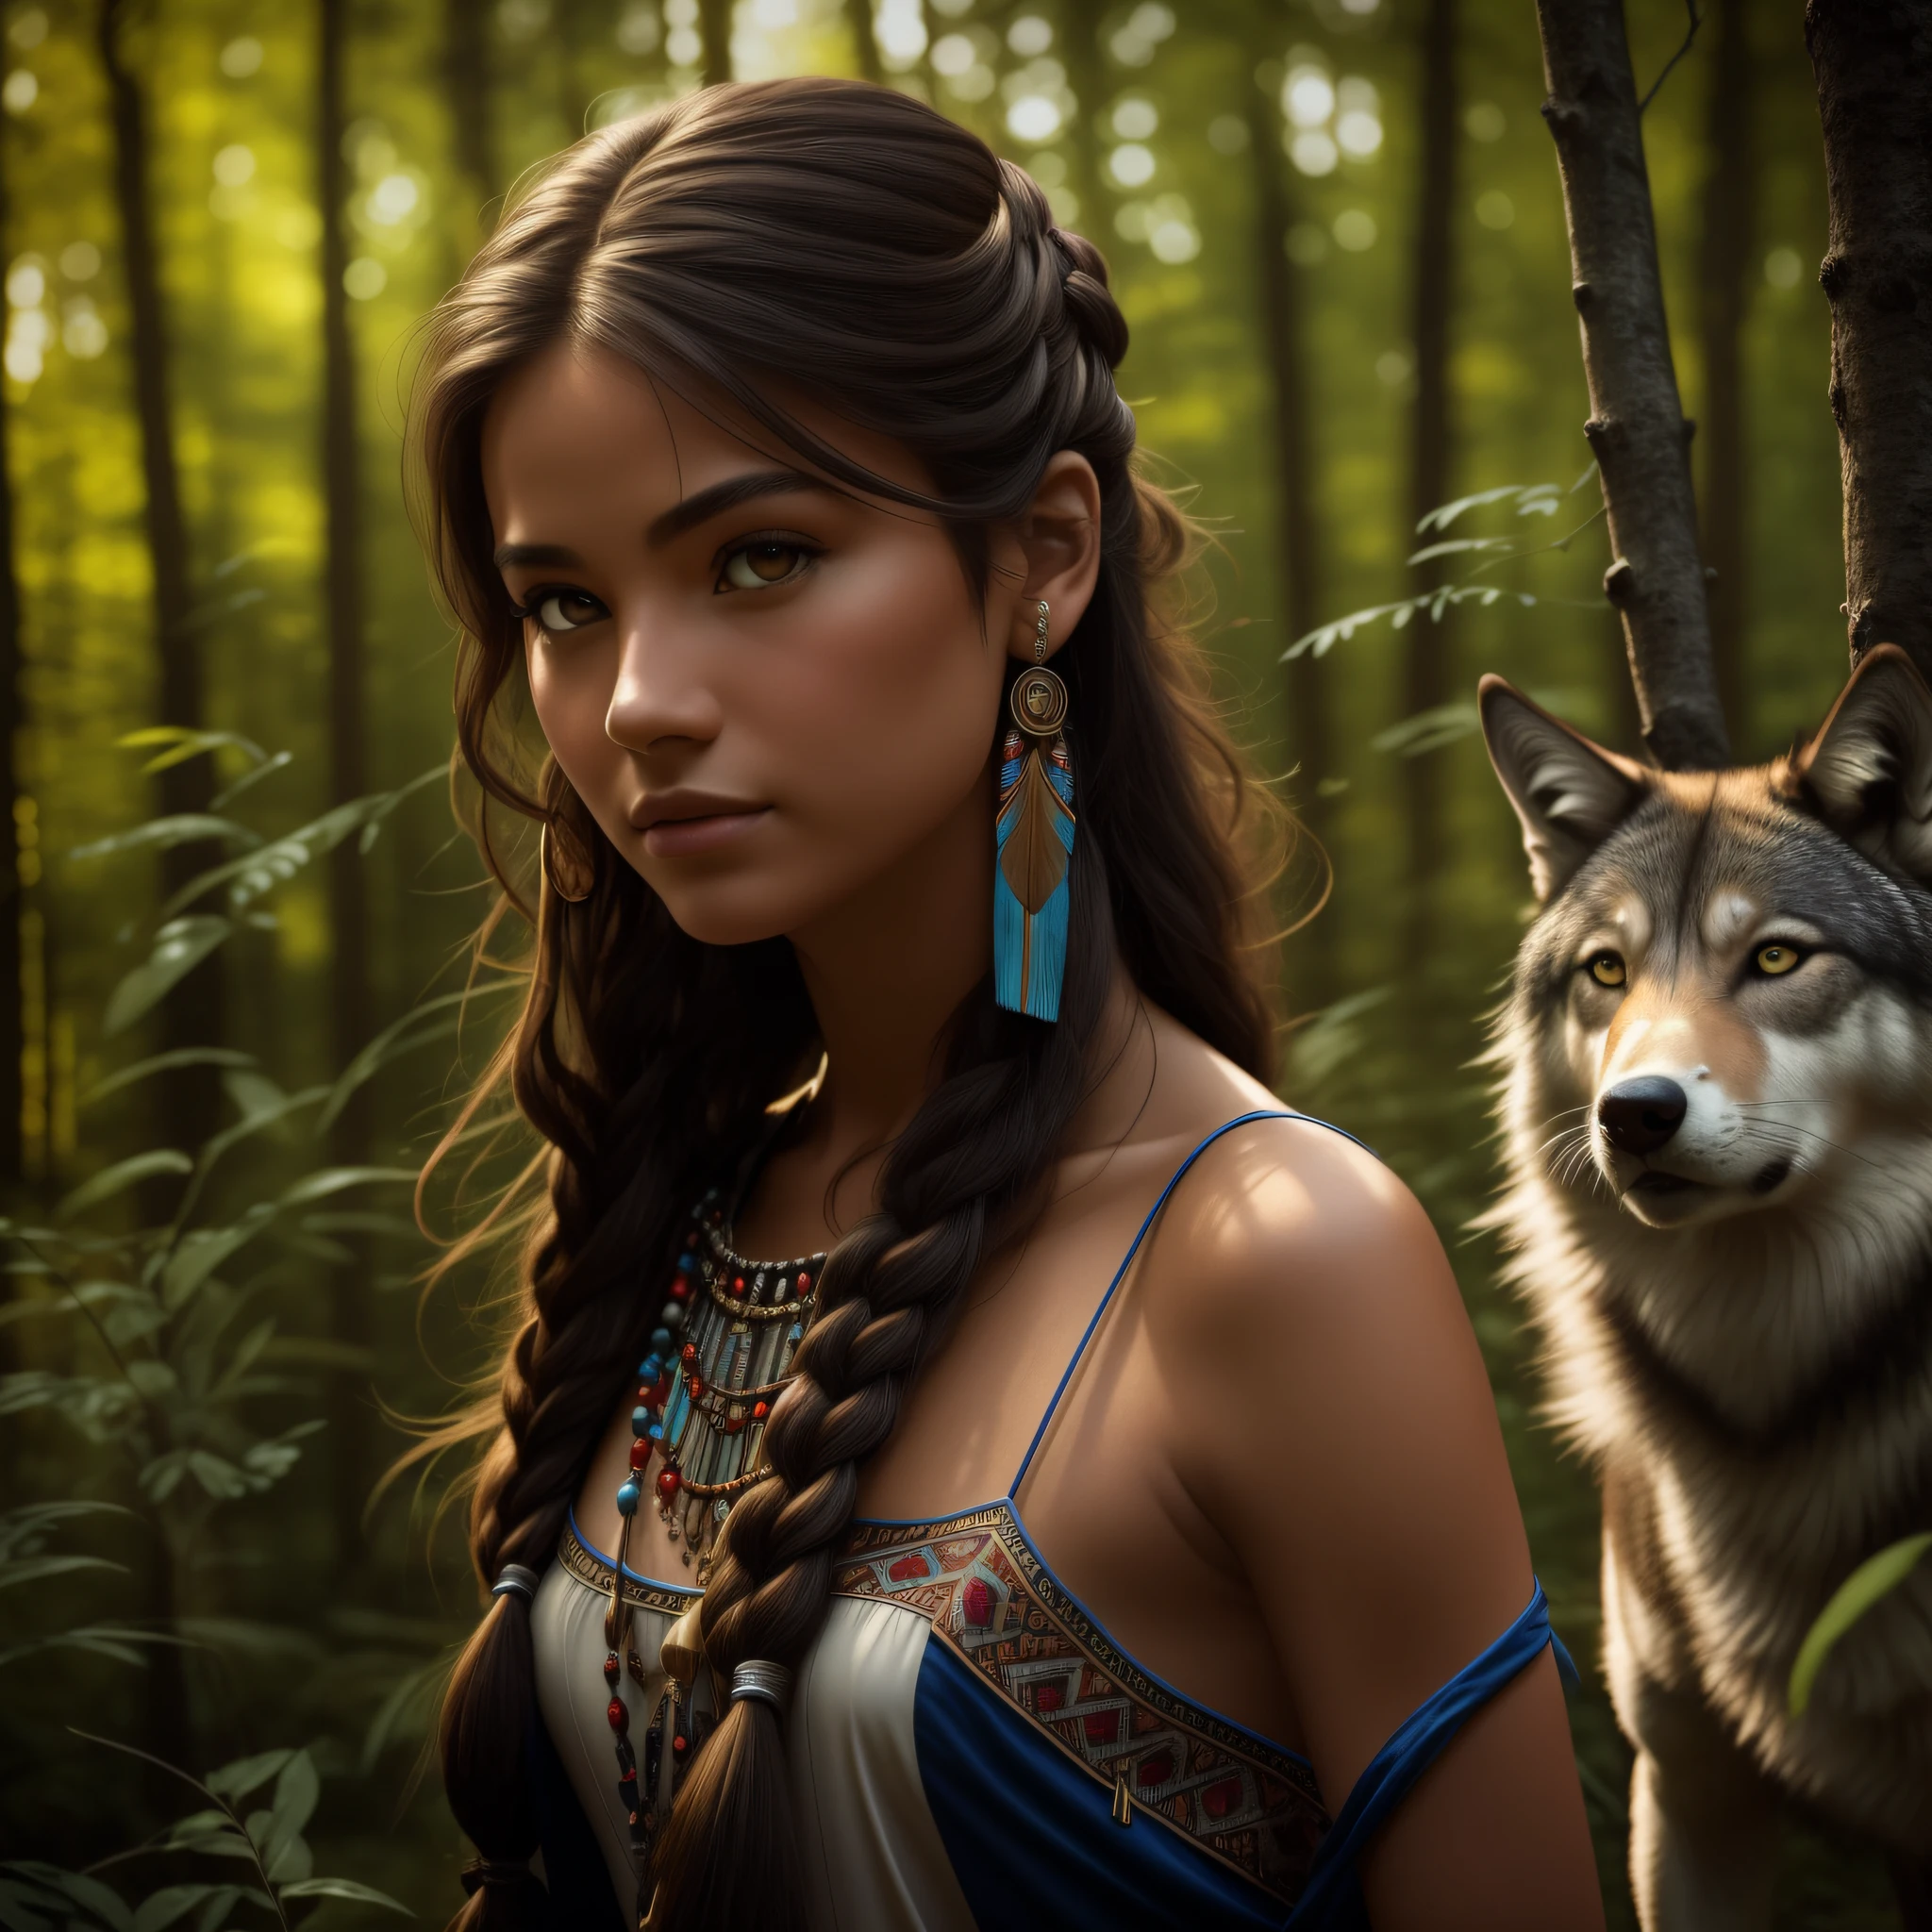 (最好的品質, 傑作: 1.1), (現實主義: 1.4),(傑作, 實際的: 1.4), (極高的精度: 1.2); (正面: 1.3), 實際的 portrait of a Native American girl with indigenous adornments with her ultra 實際的 pet wolf in the forest, 部落服饰, 超長髮, 裸露的肩膀, 夜空, 銀河輝光, 海洋, 水, 頭部傾斜, 風, 雲, 自然光, 戶外的, 獨自的, 休息, 電影光, 超高解析度, 8k超高清, 薄膜珠,  完美的解剖結構, Delicate and 精美的 skin, 最好的陰影, 精美的, 生的, 高解析度, 女獵人, 夜晚, 滿月度.